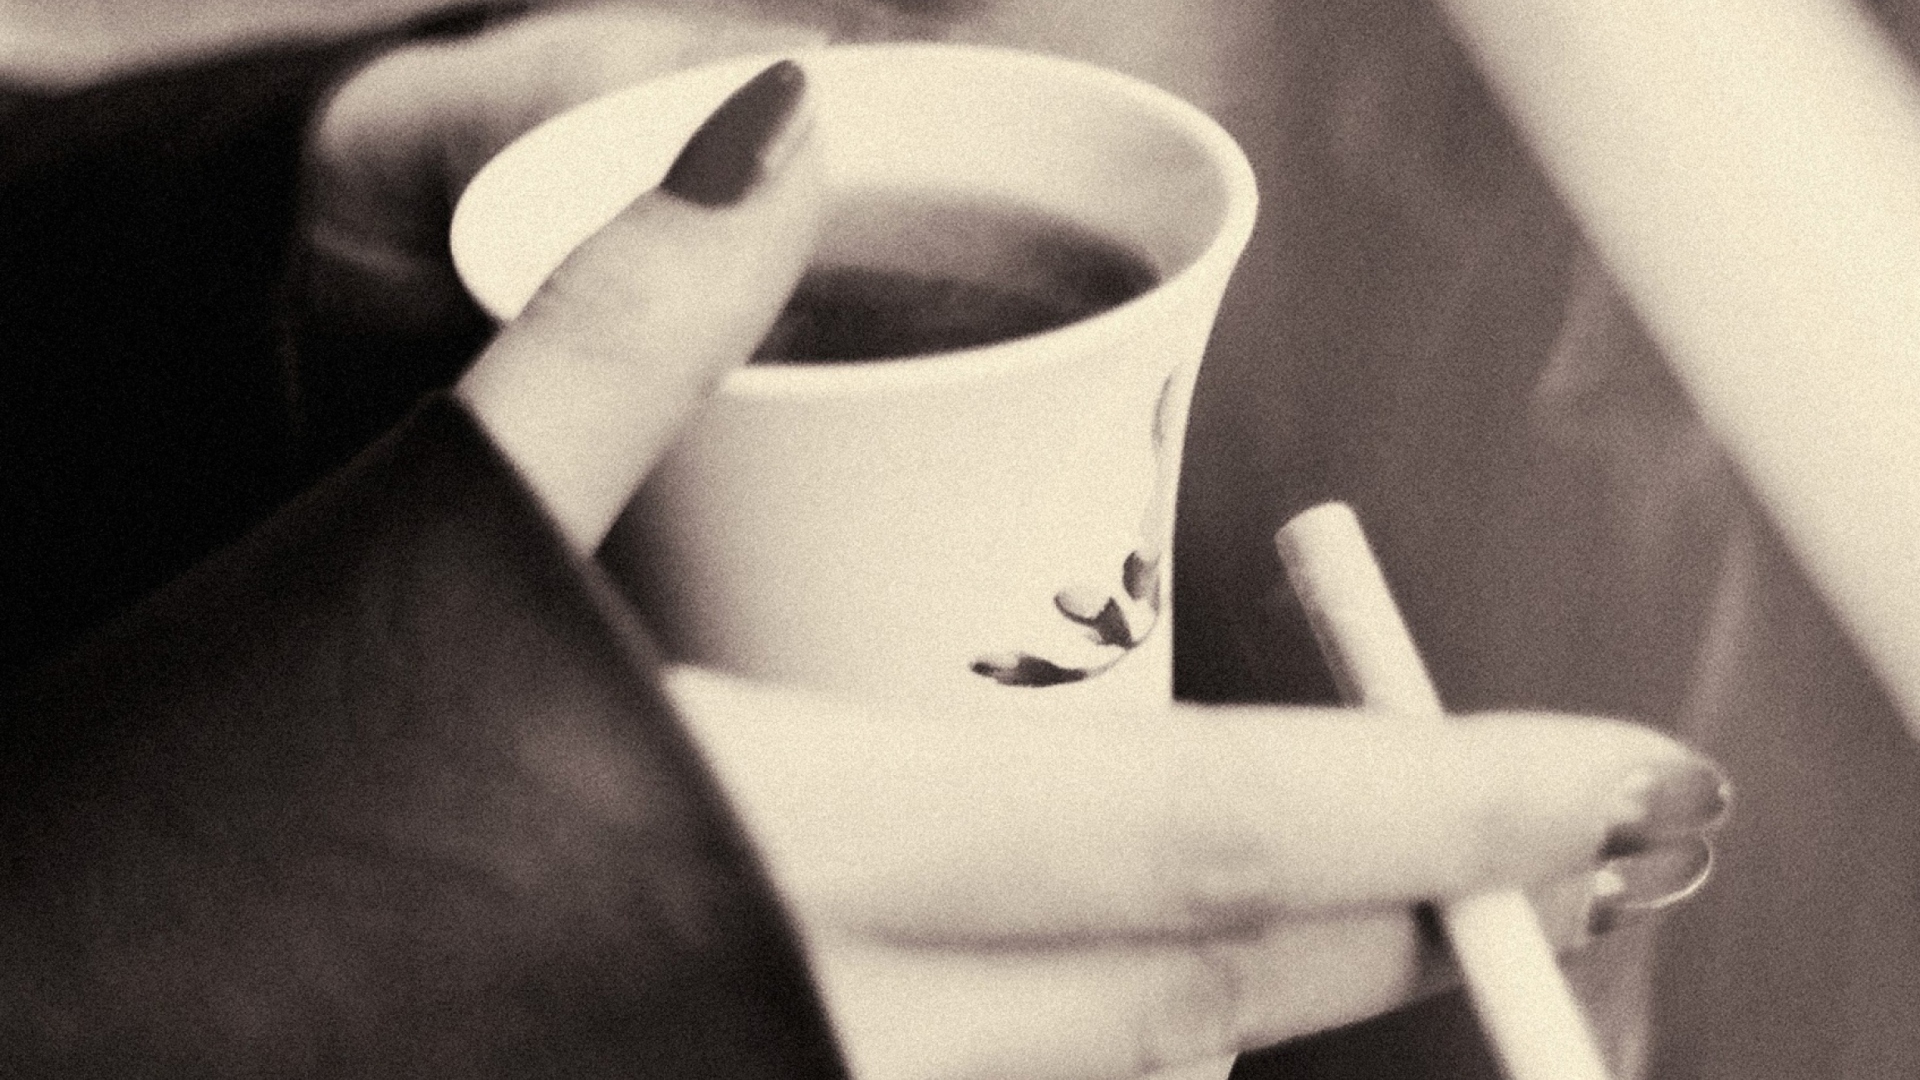 Das Hot Coffee In Her Hands Wallpaper 1920x1080